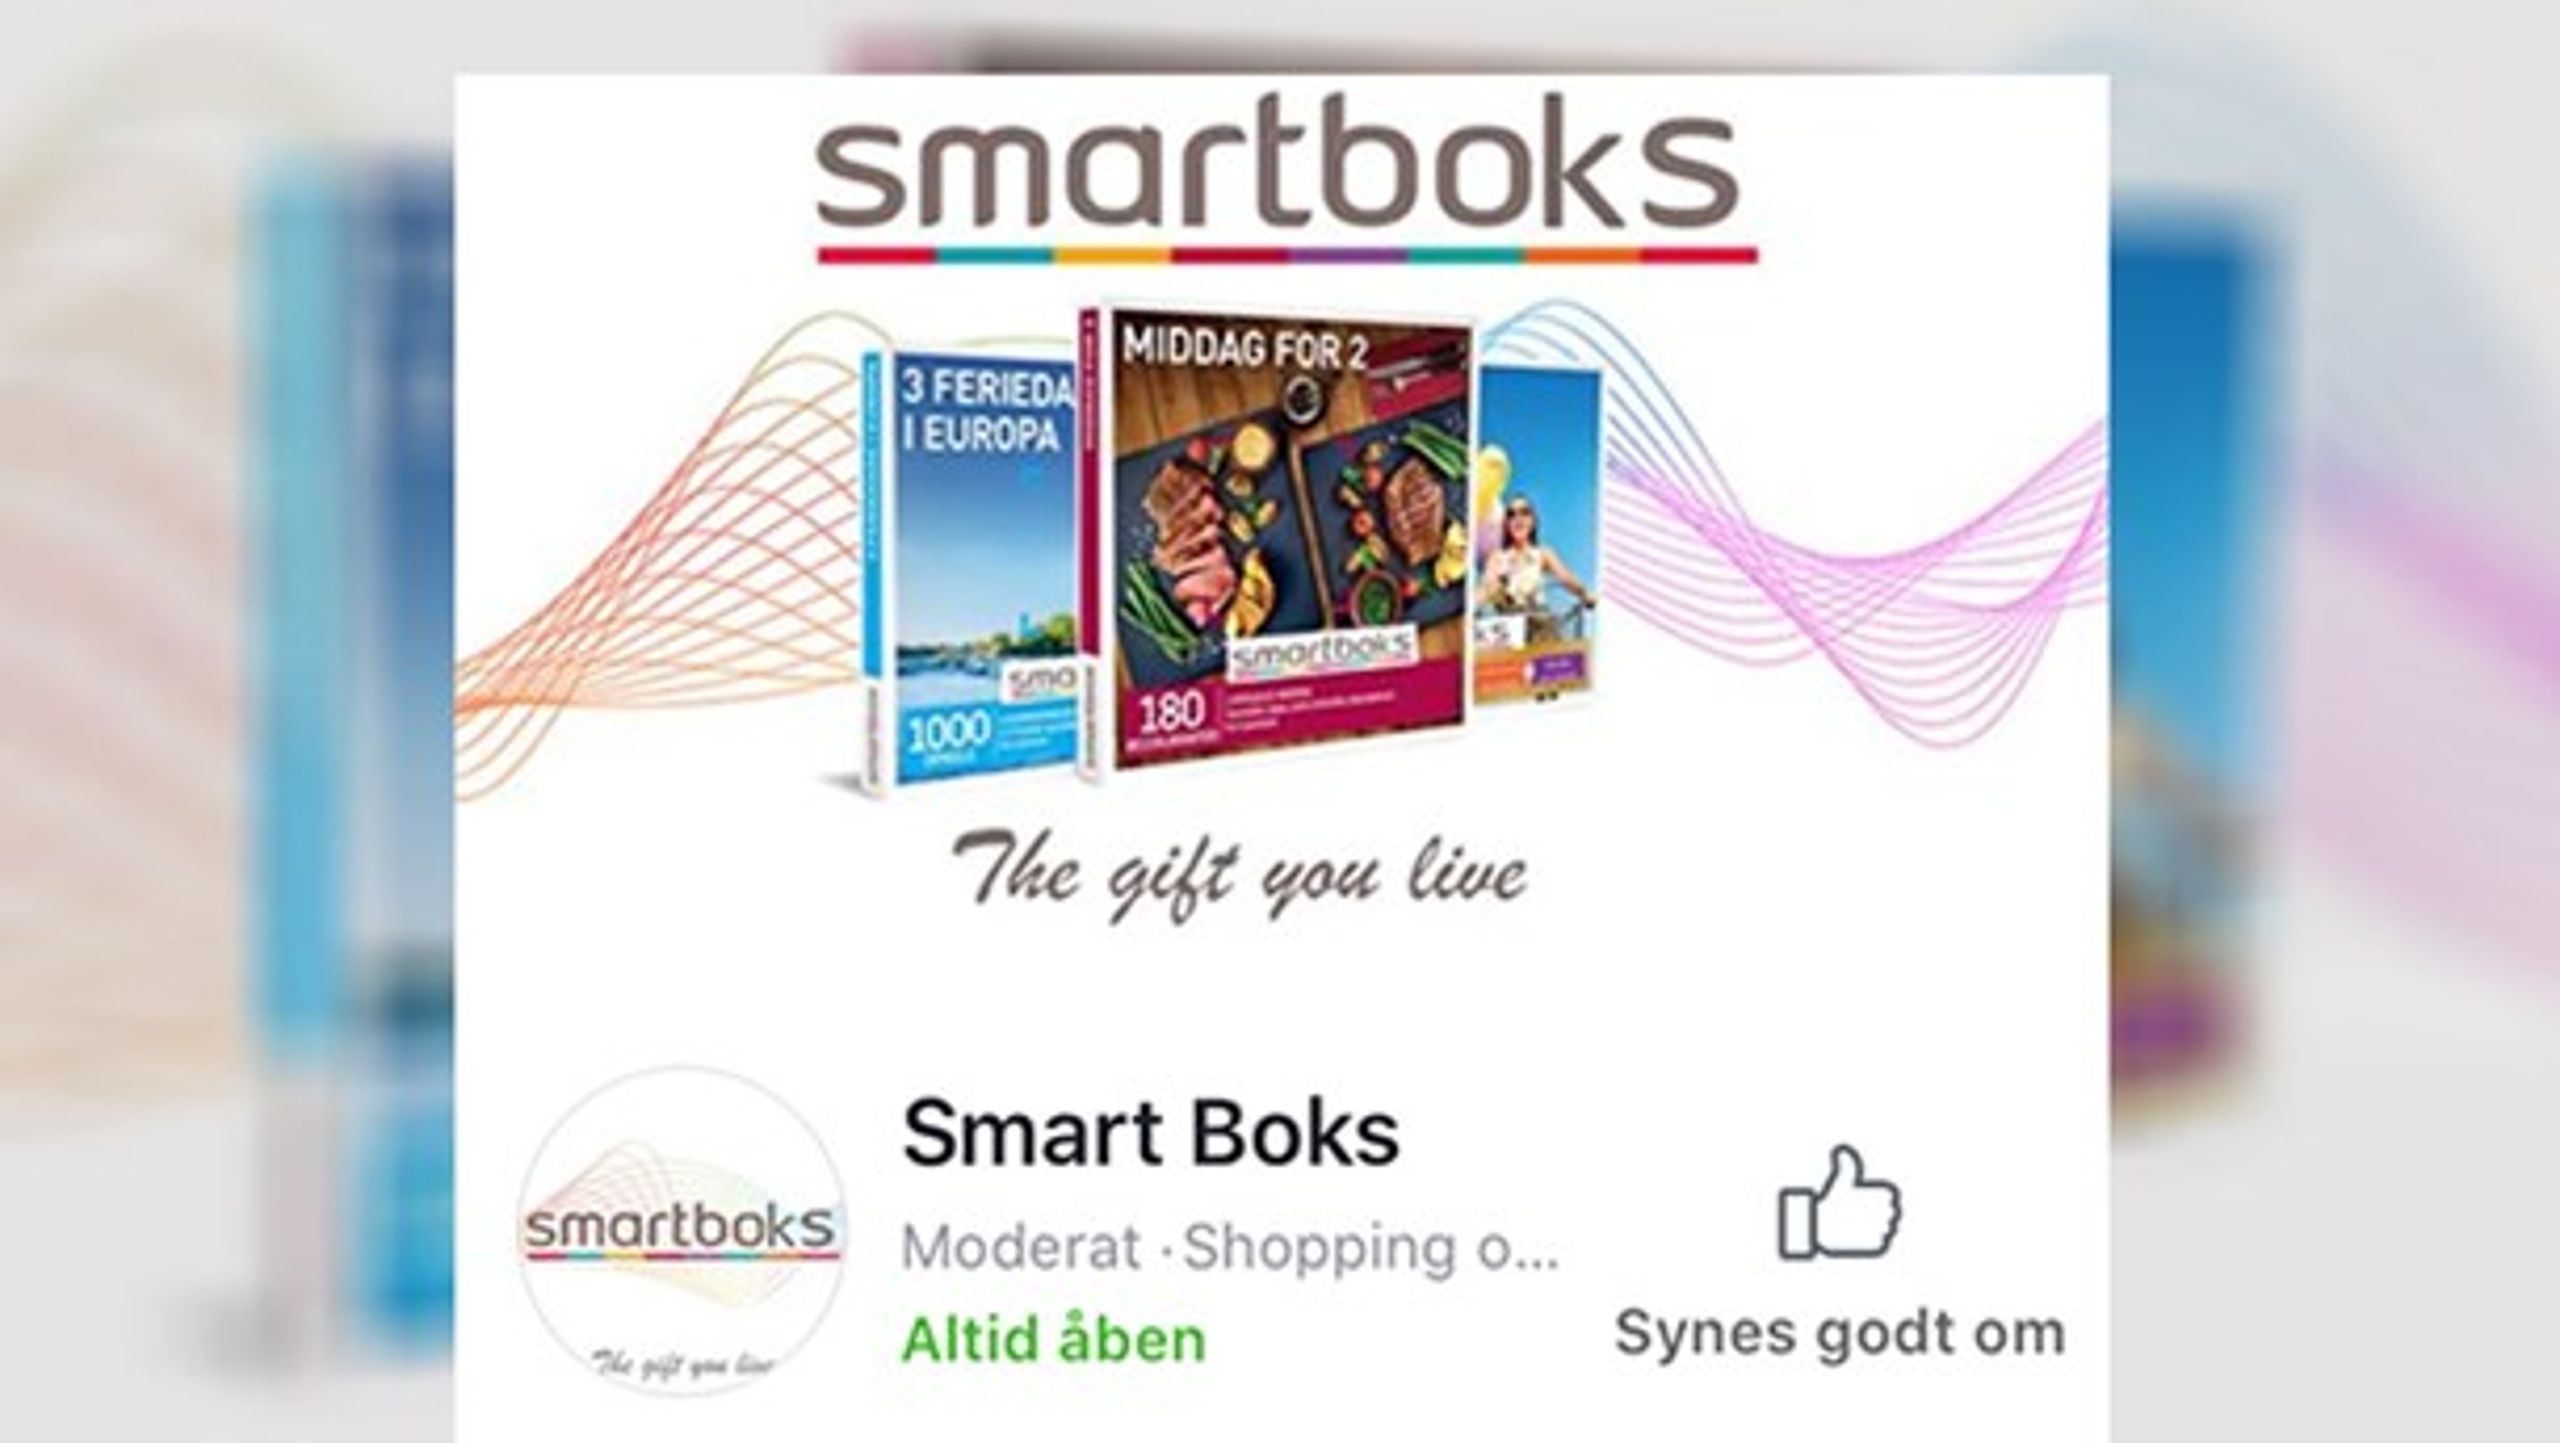 Sådan ser toppen af den falske facebookside ud. Logoet ligner Smartbox' logo, men oplevelsesvirksomhedens navn staves forkert både i logoet og facebooksidens navn (Smartboks).&nbsp;